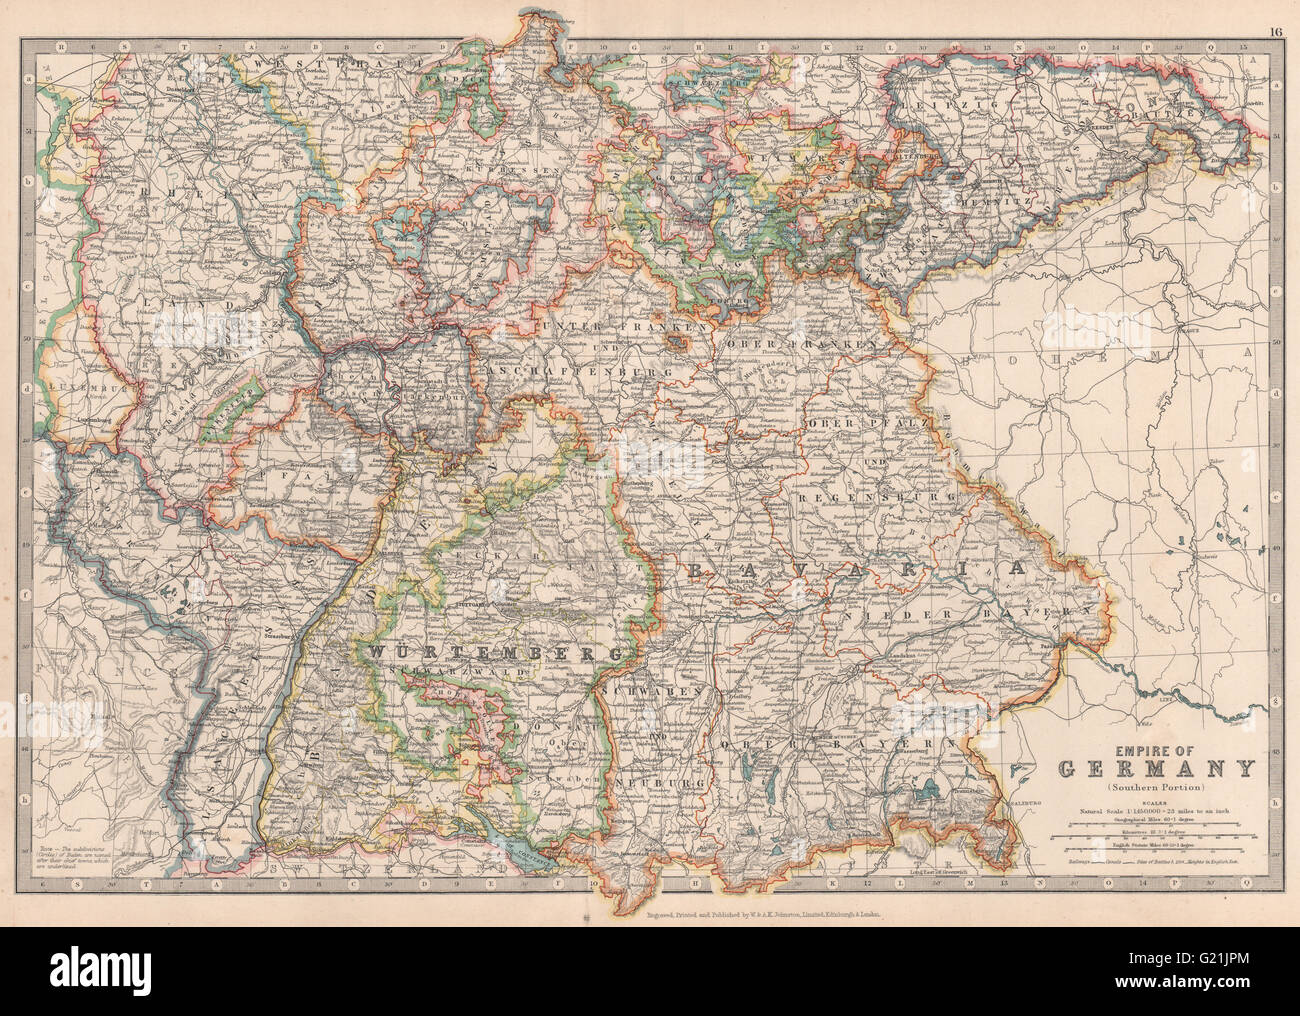 DEUTSCHEN Reiches Süden zeigt wichtige Schlachtfeld & Termine. JOHNSTON, 1912 Karte Stockfoto